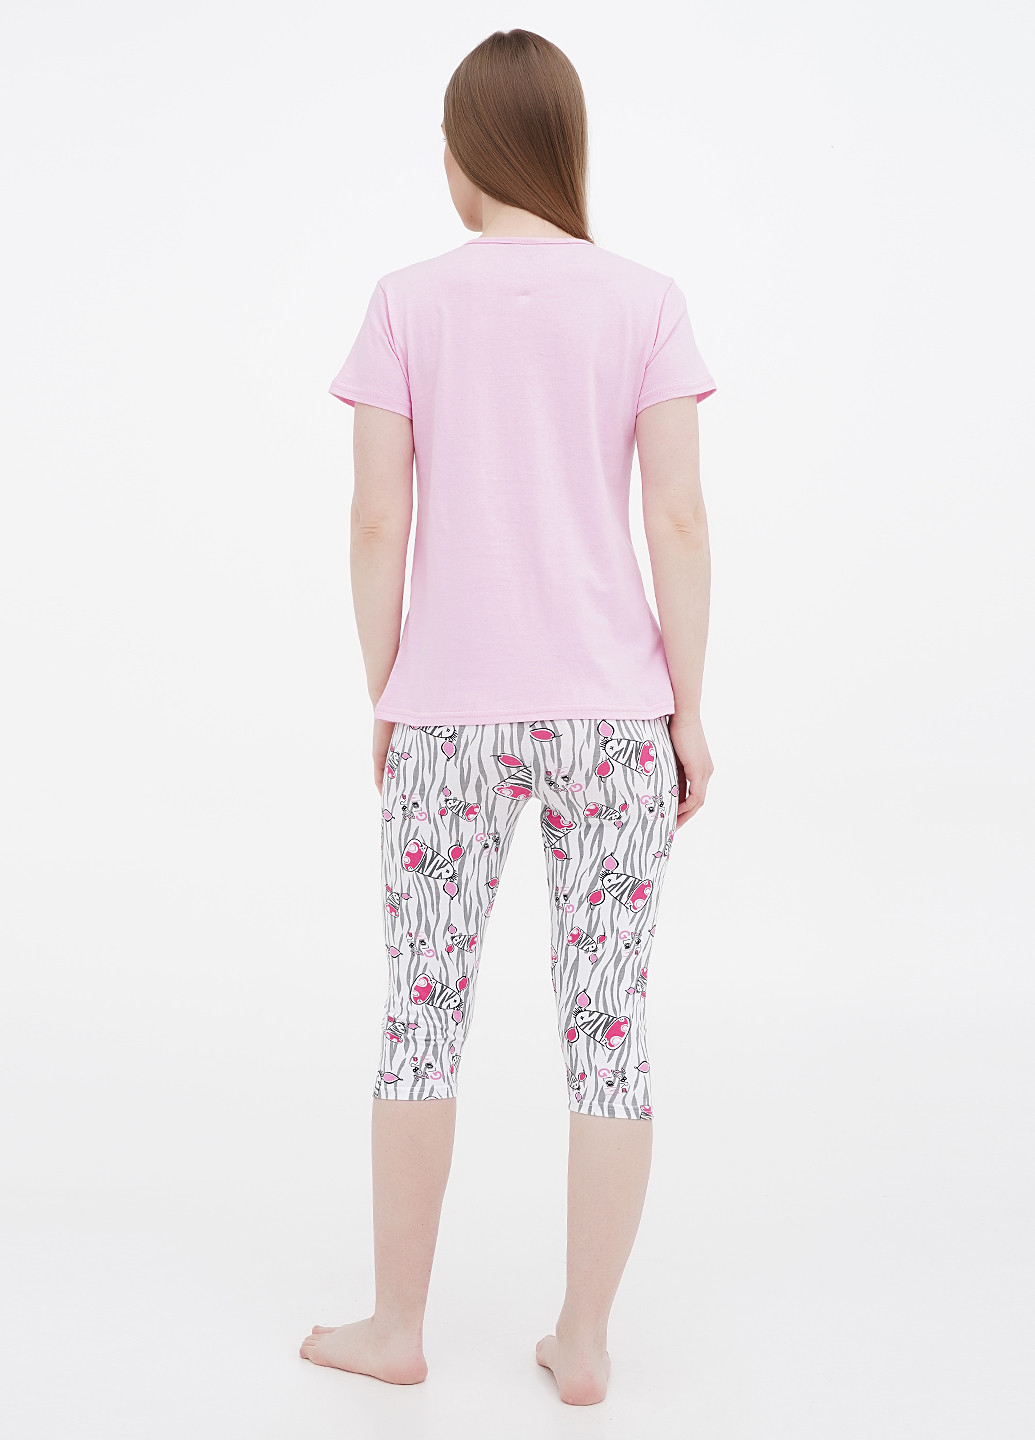 Світло-рожева всесезон піжама (футболка, бриджі) футболка+ бриджі Lucci